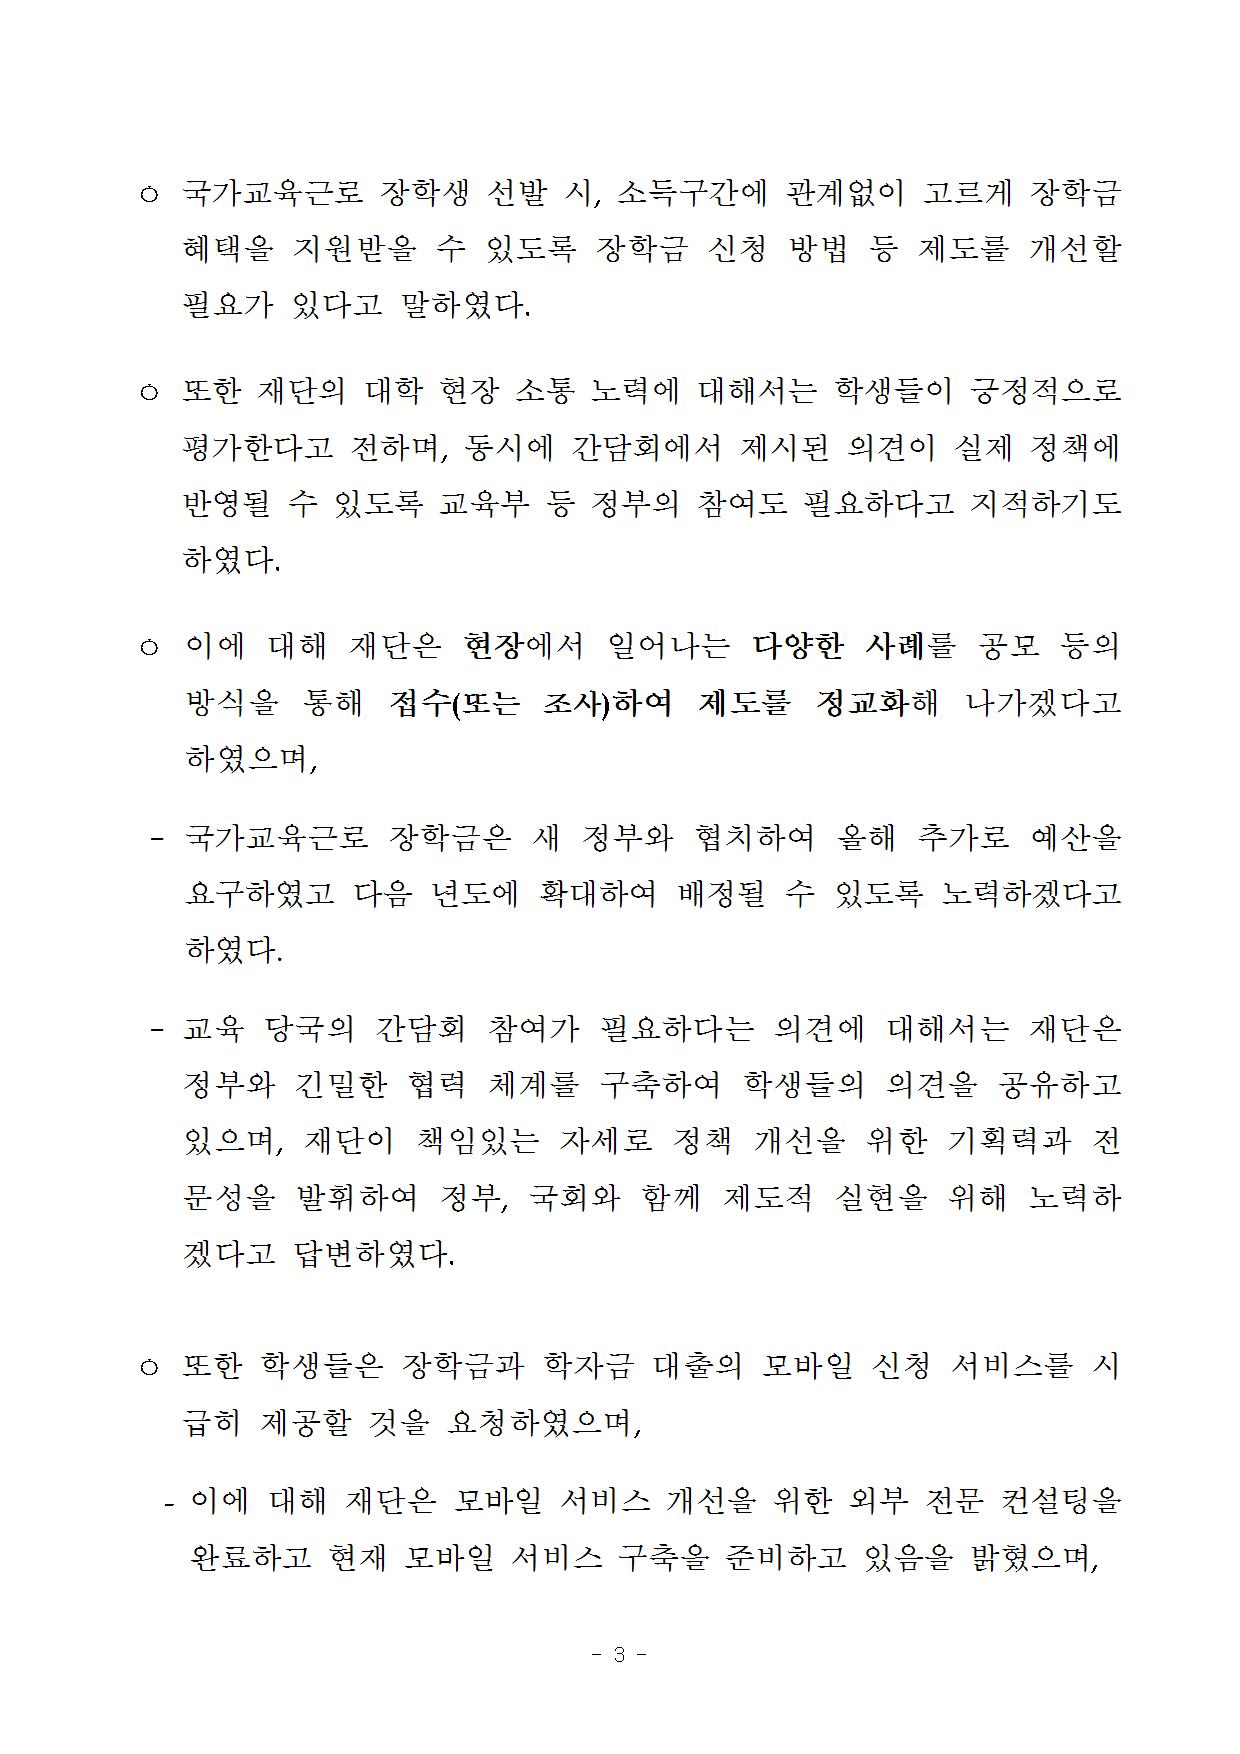 06-23(금)[보도자료] 강원권역 현장 소통 간담회 개최003.jpg